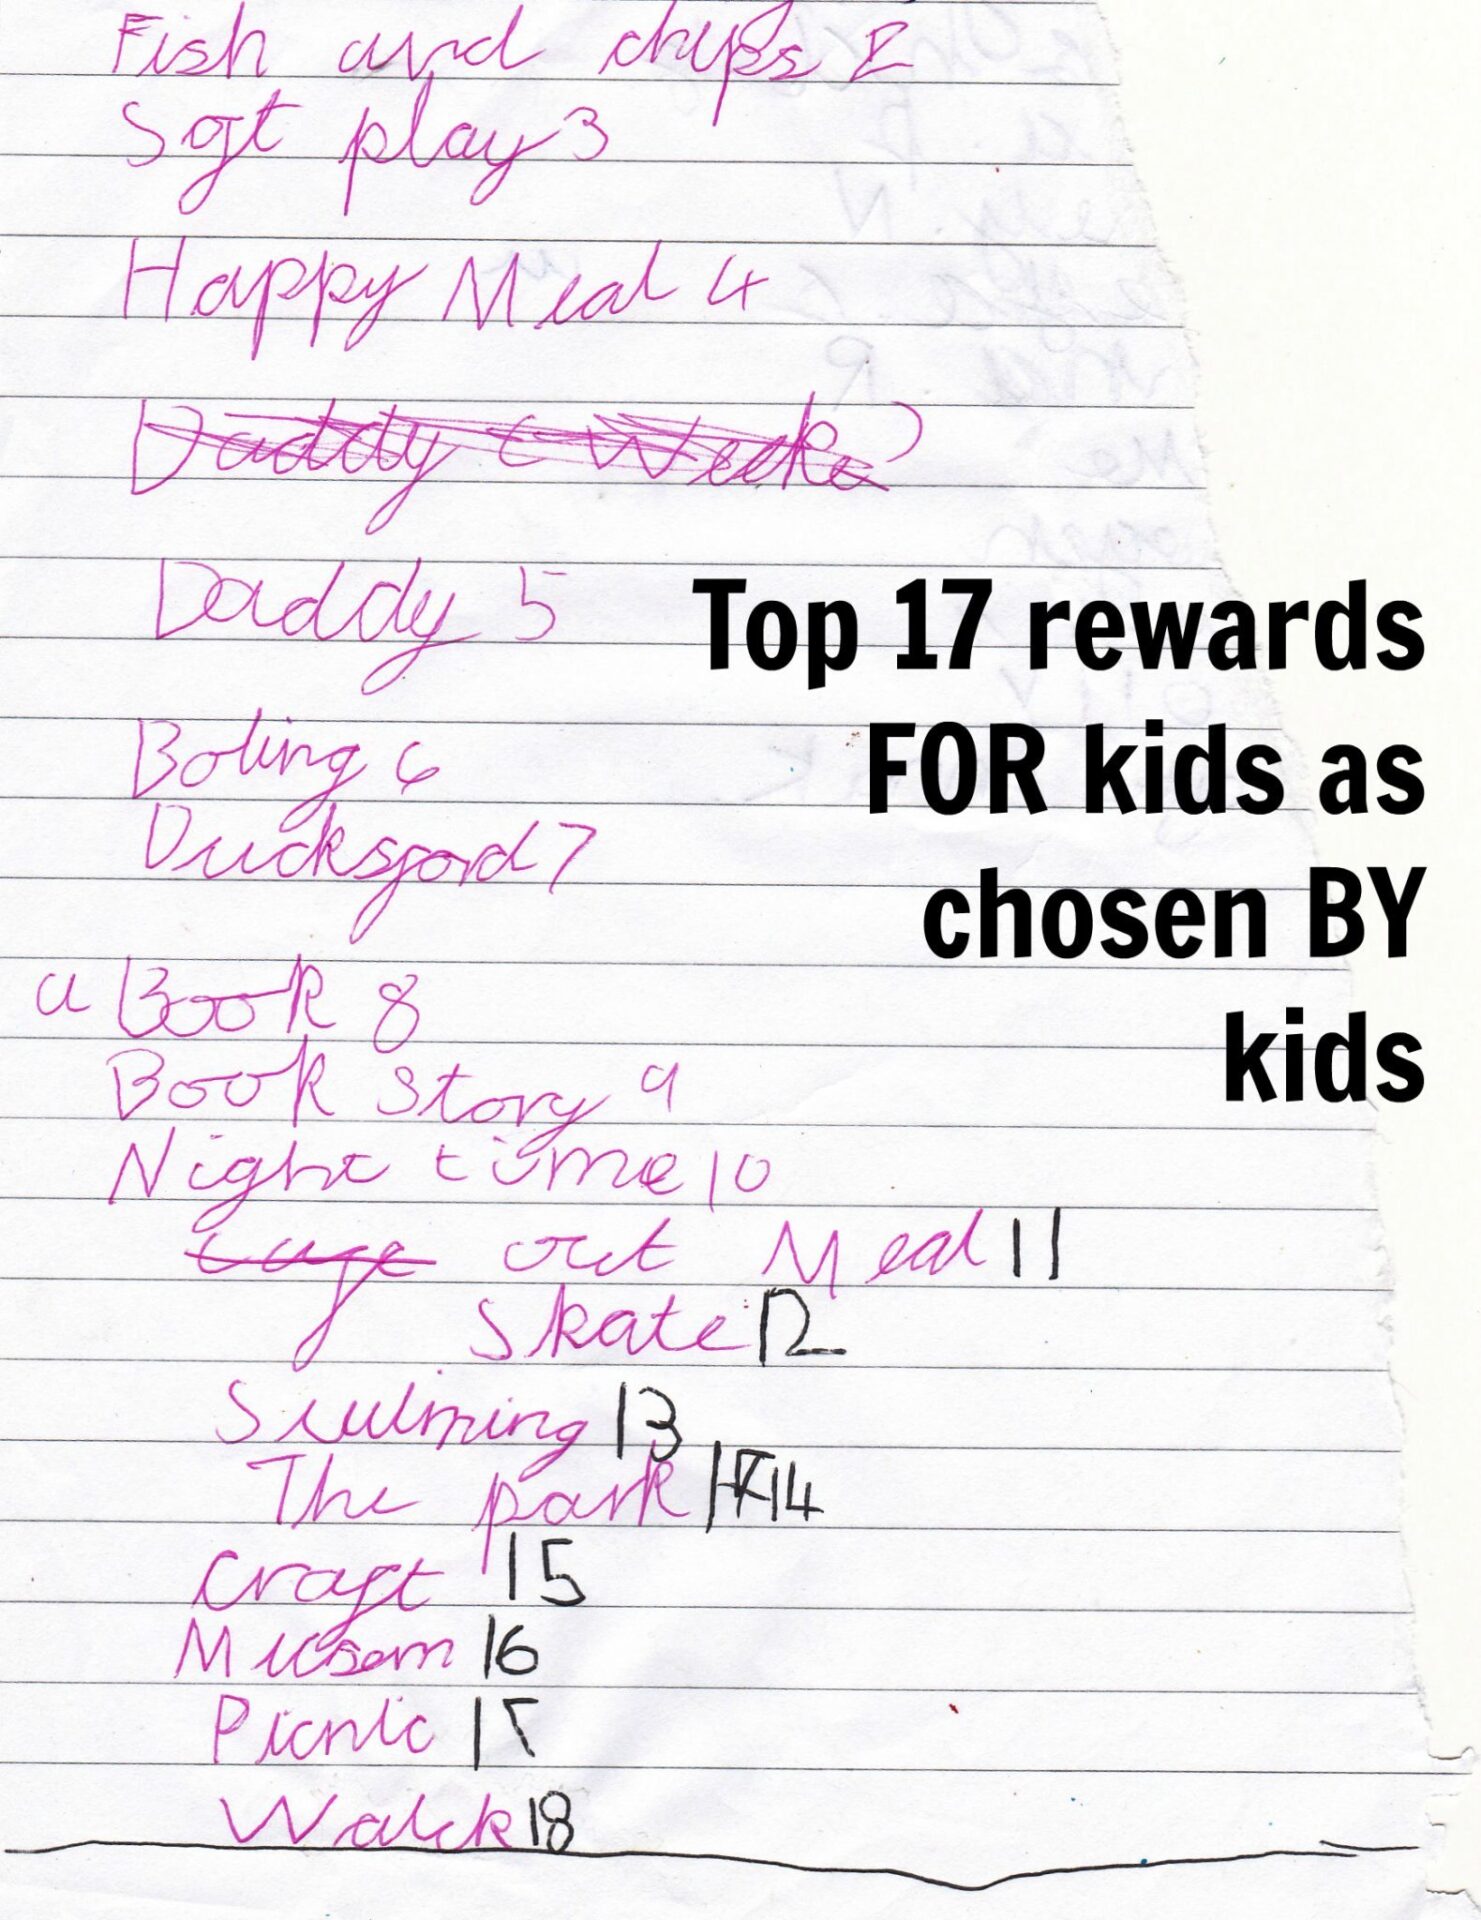 Good rewards for kids